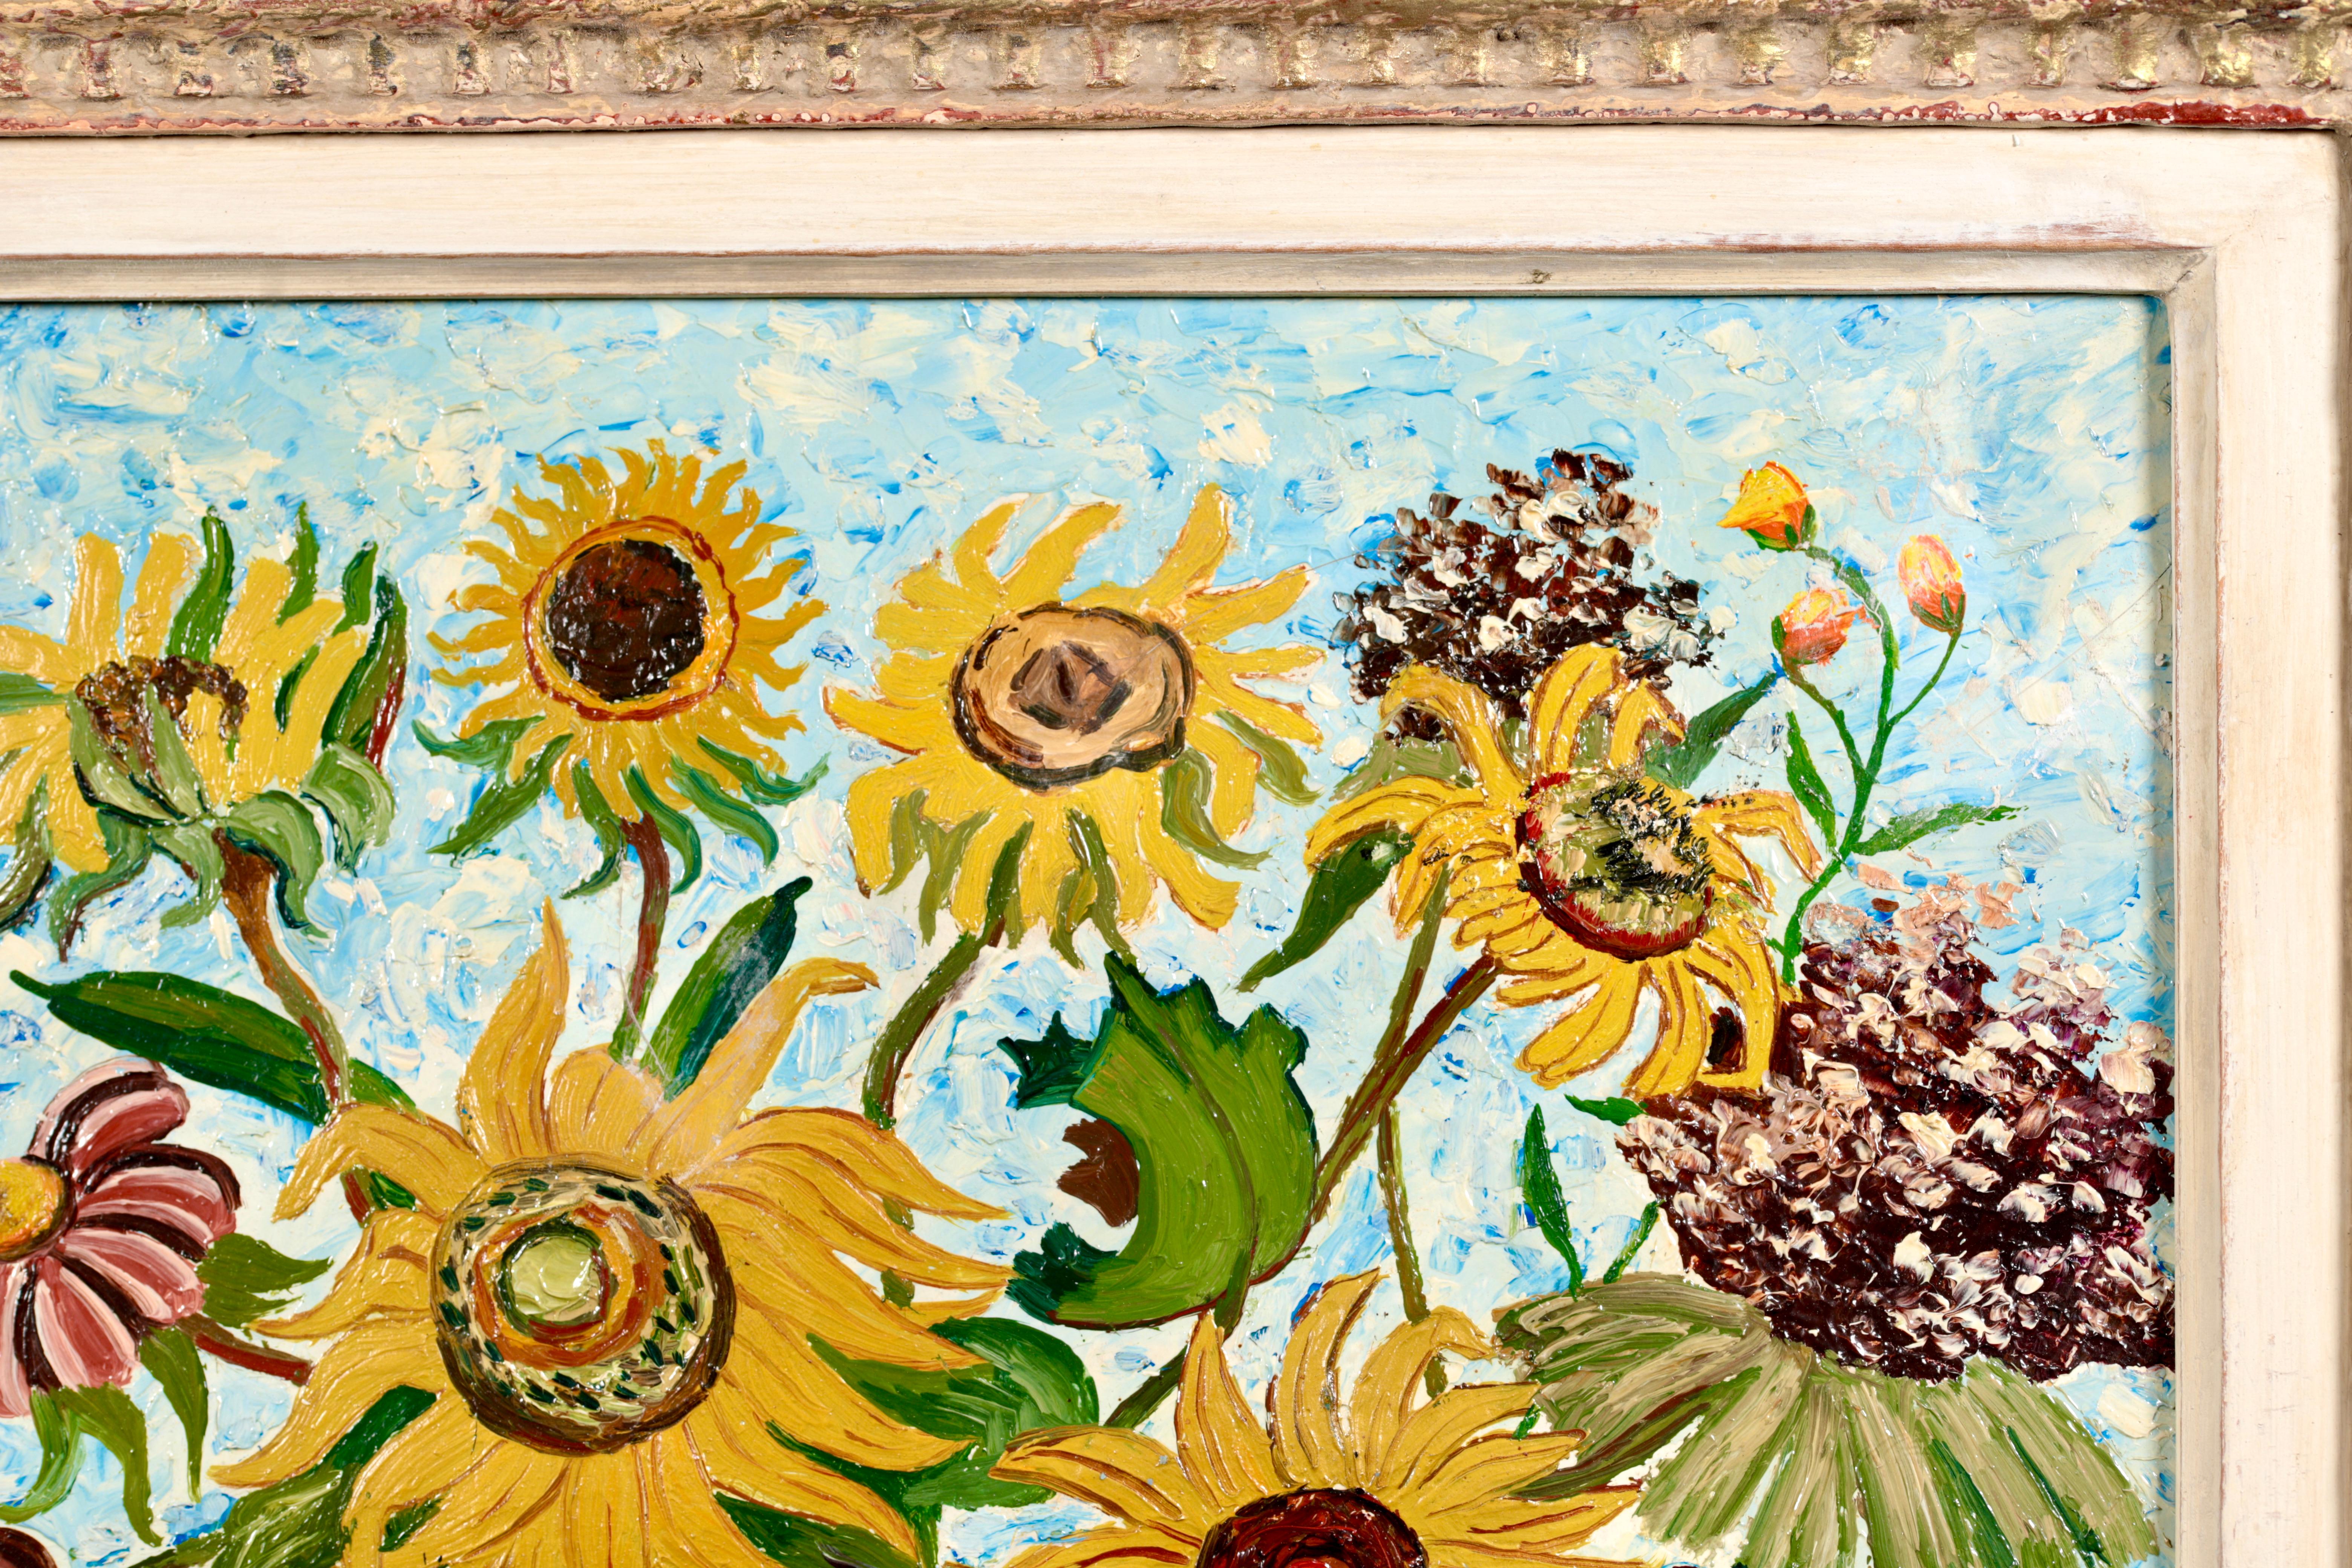 Nature morte signée, huile sur toile, circa 1920, du peintre impressionniste français Elisee Maclet. L'œuvre représente un vase décoratif rempli de tournesols jaunes et bruns sur un fond bleu. Une belle pièce.

Signature :
Signé en bas à